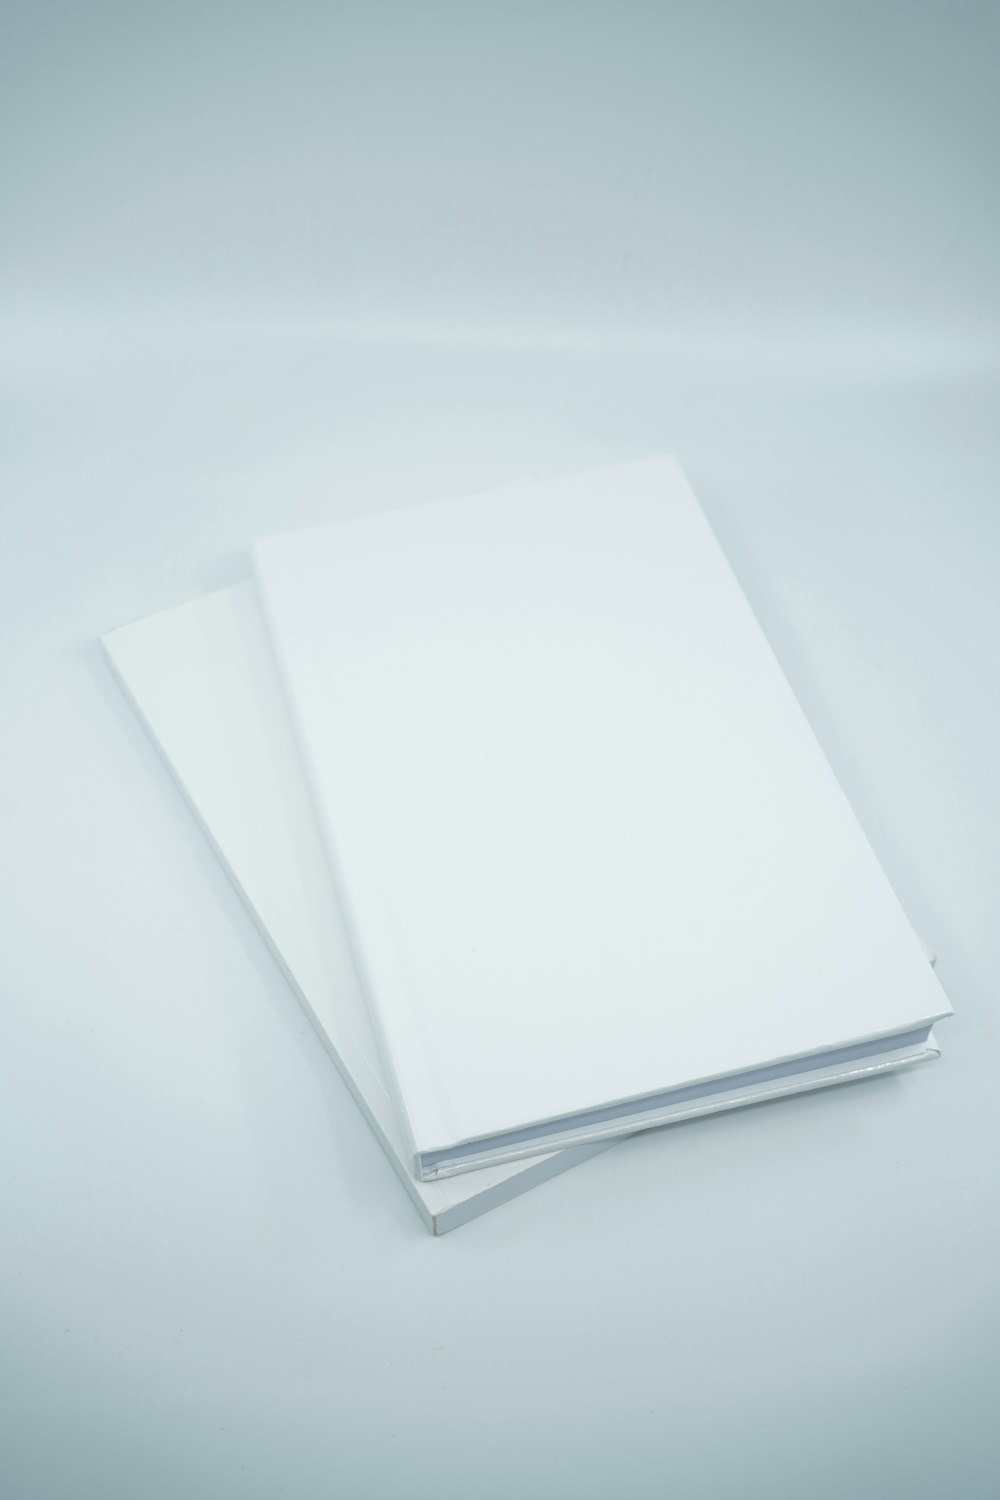 Weißes Druckerpapier auf weißer Oberfläche